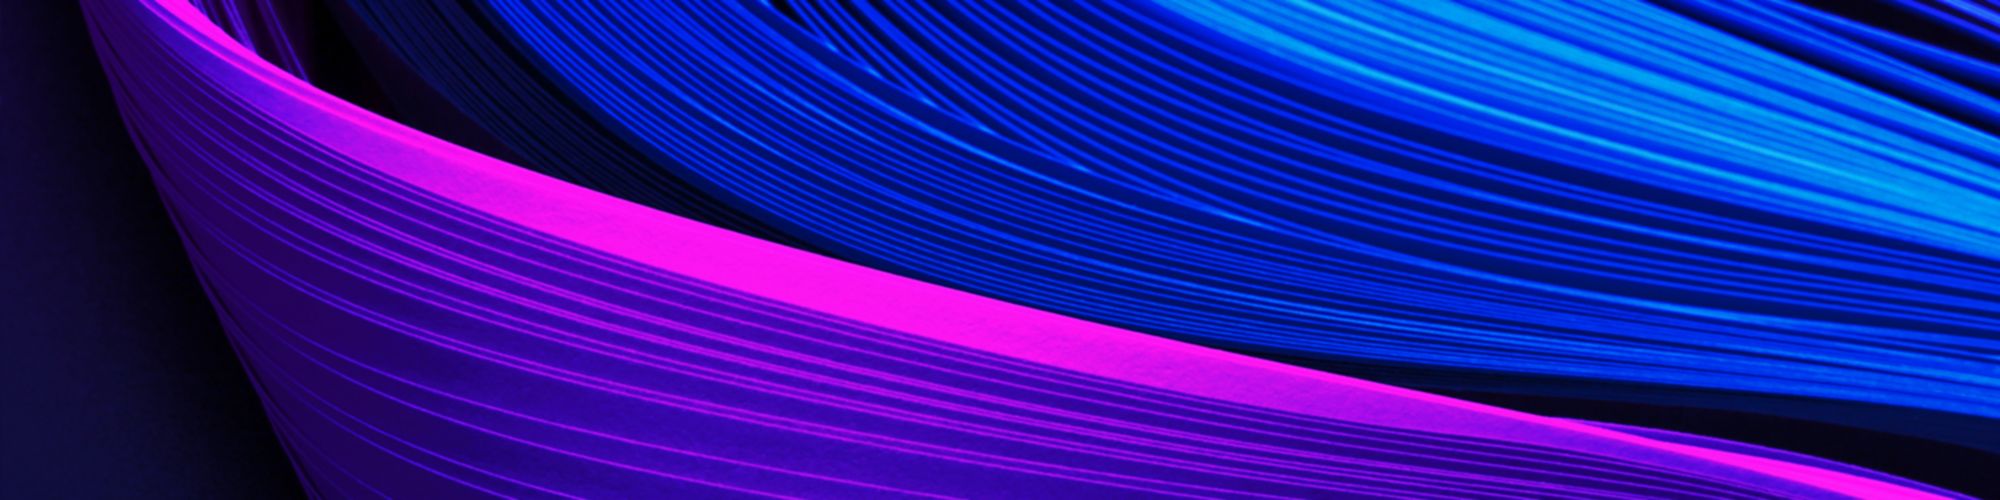 Blue purple swirl lines